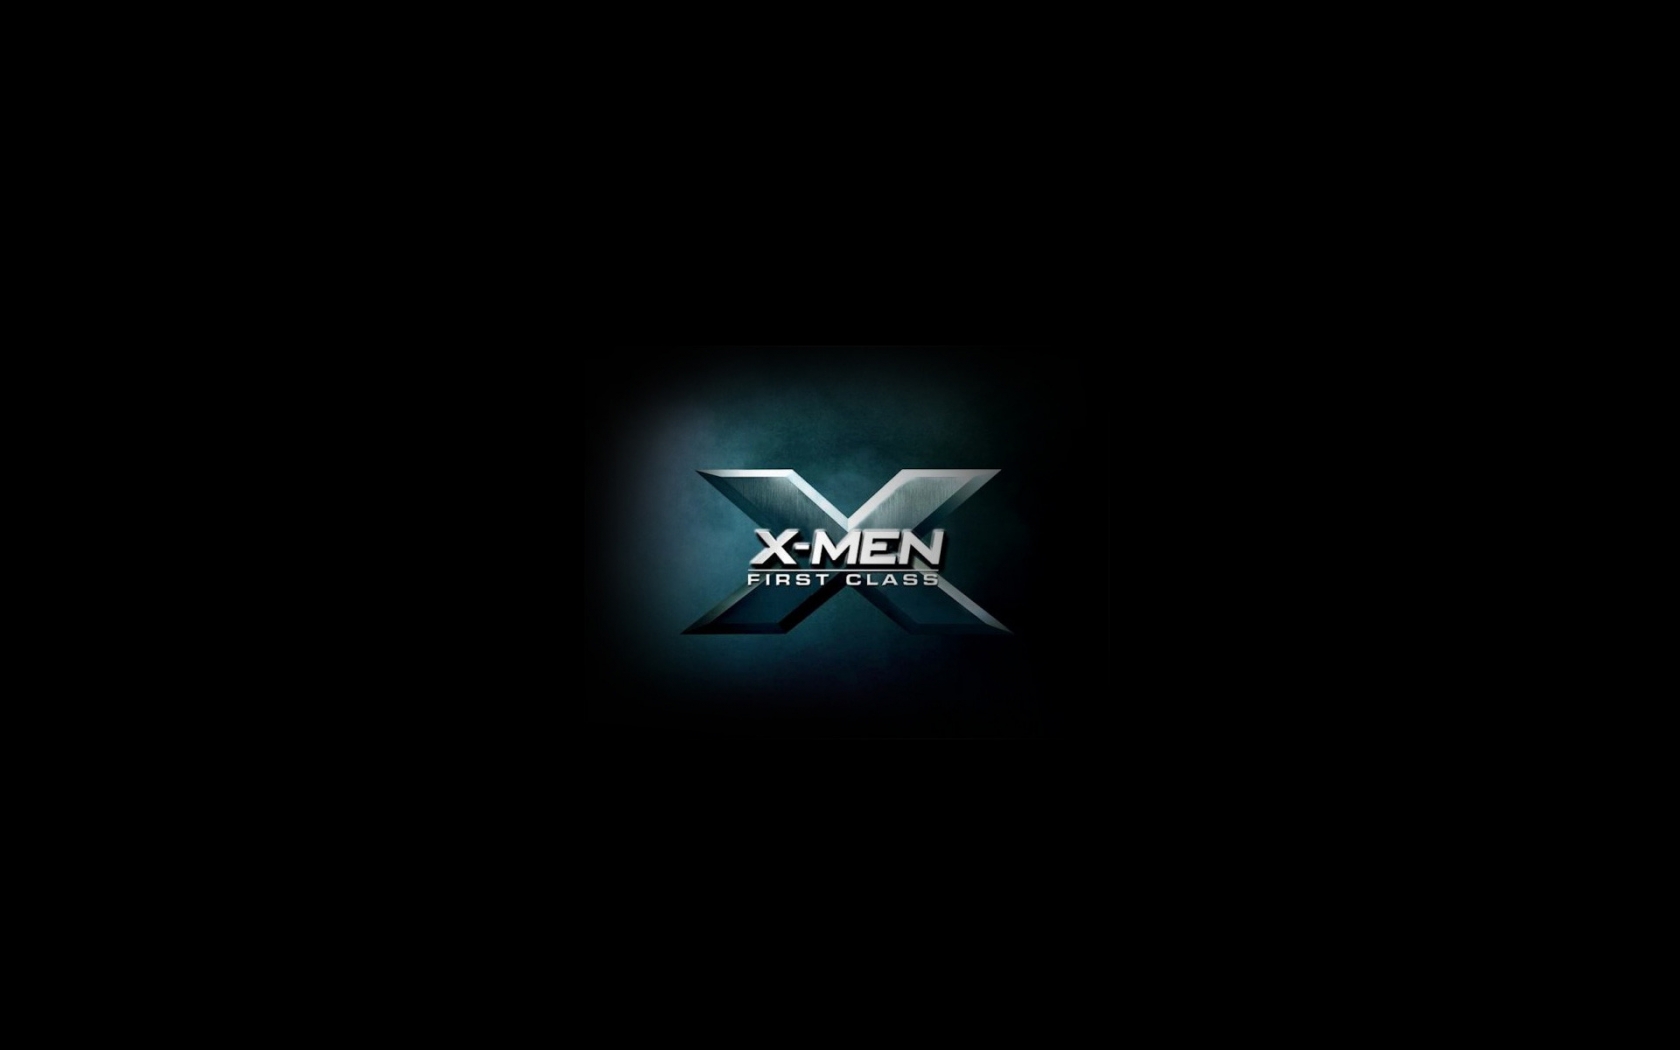 X Men First Class 2011 for 1680 x 1050 widescreen resolution